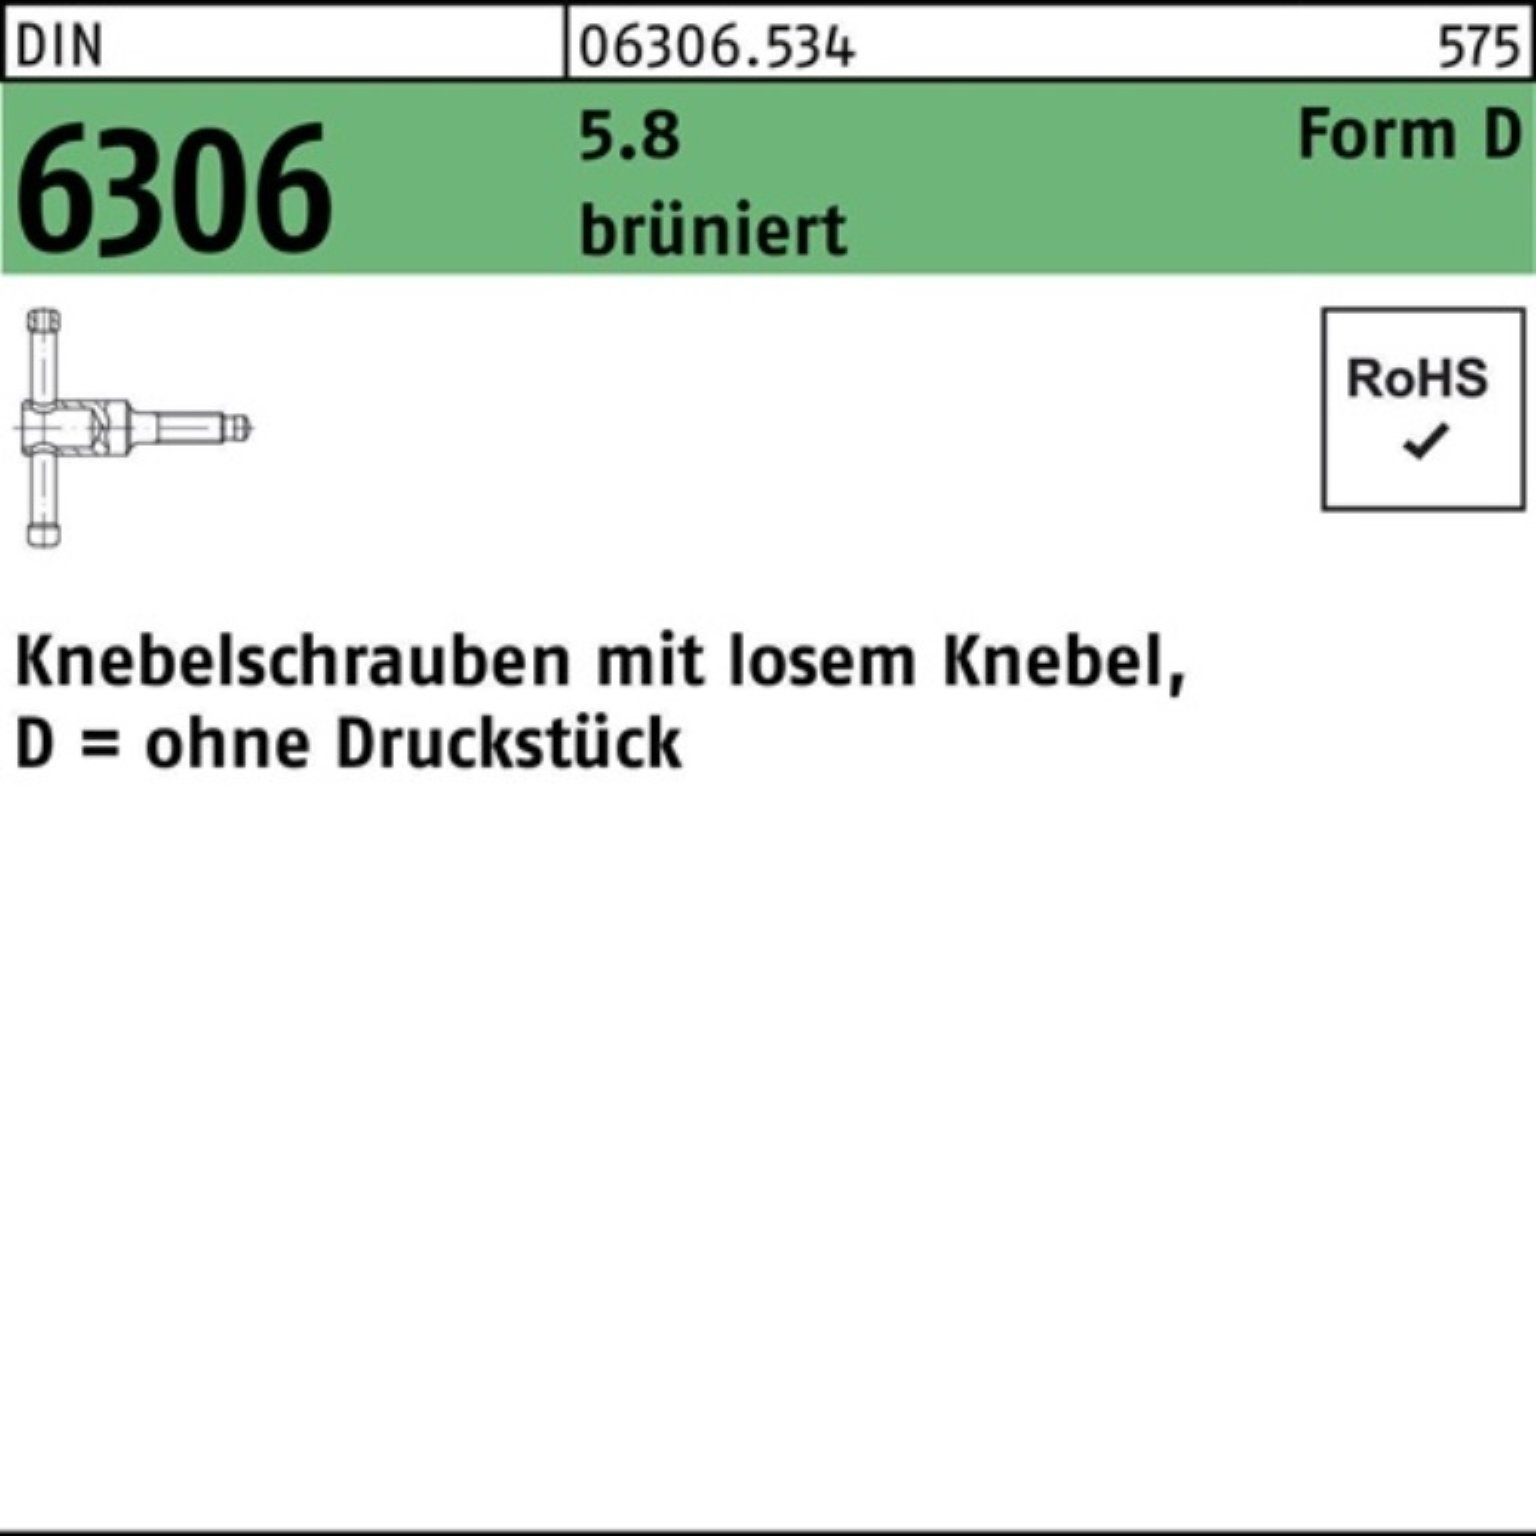 Reyher Schraube 100er DM Knebelschraube 6306 DIN brünier 60 losen Knebel 12x Pack 5.8